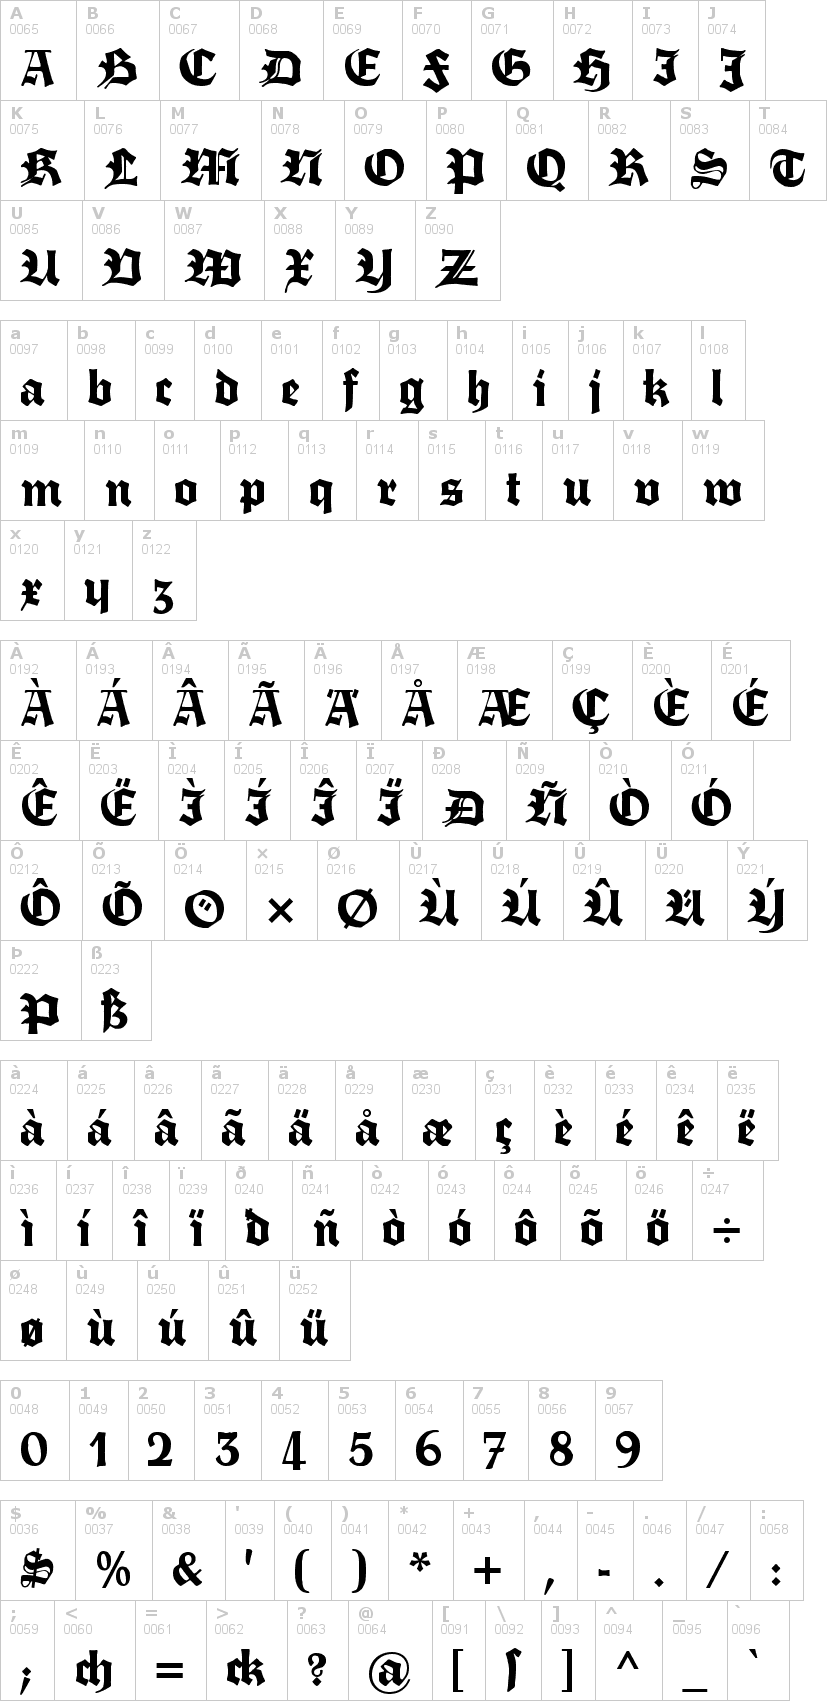 Lettere dell'alfabeto del font fette-trump-deutsch con le quali è possibile realizzare adesivi prespaziati